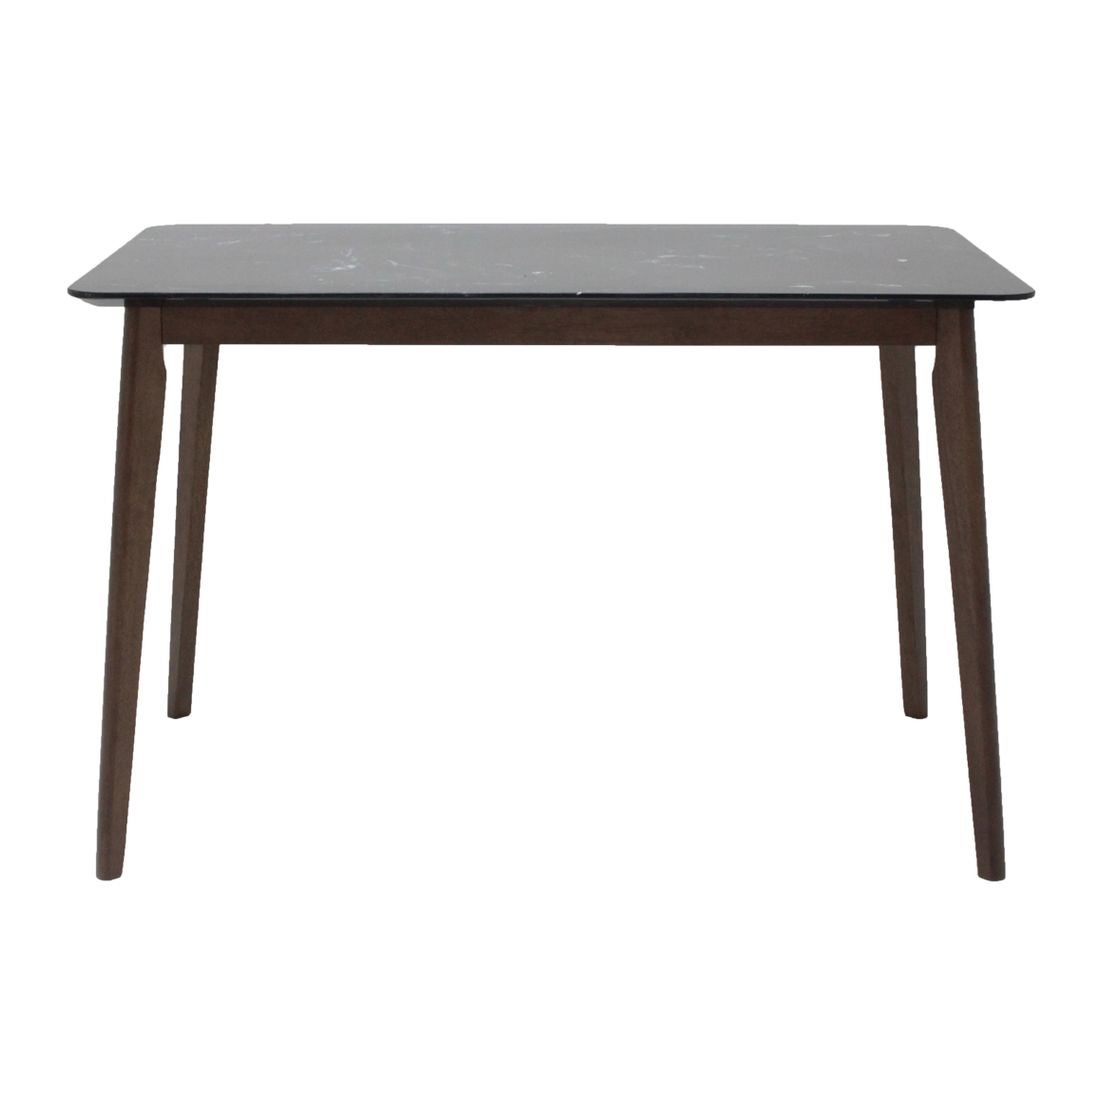 โต๊ะทานอาหาร โต๊ะอาหารขาไม้ท๊อปหิน รุ่น Morsen สีสีดำ-SB Design Square